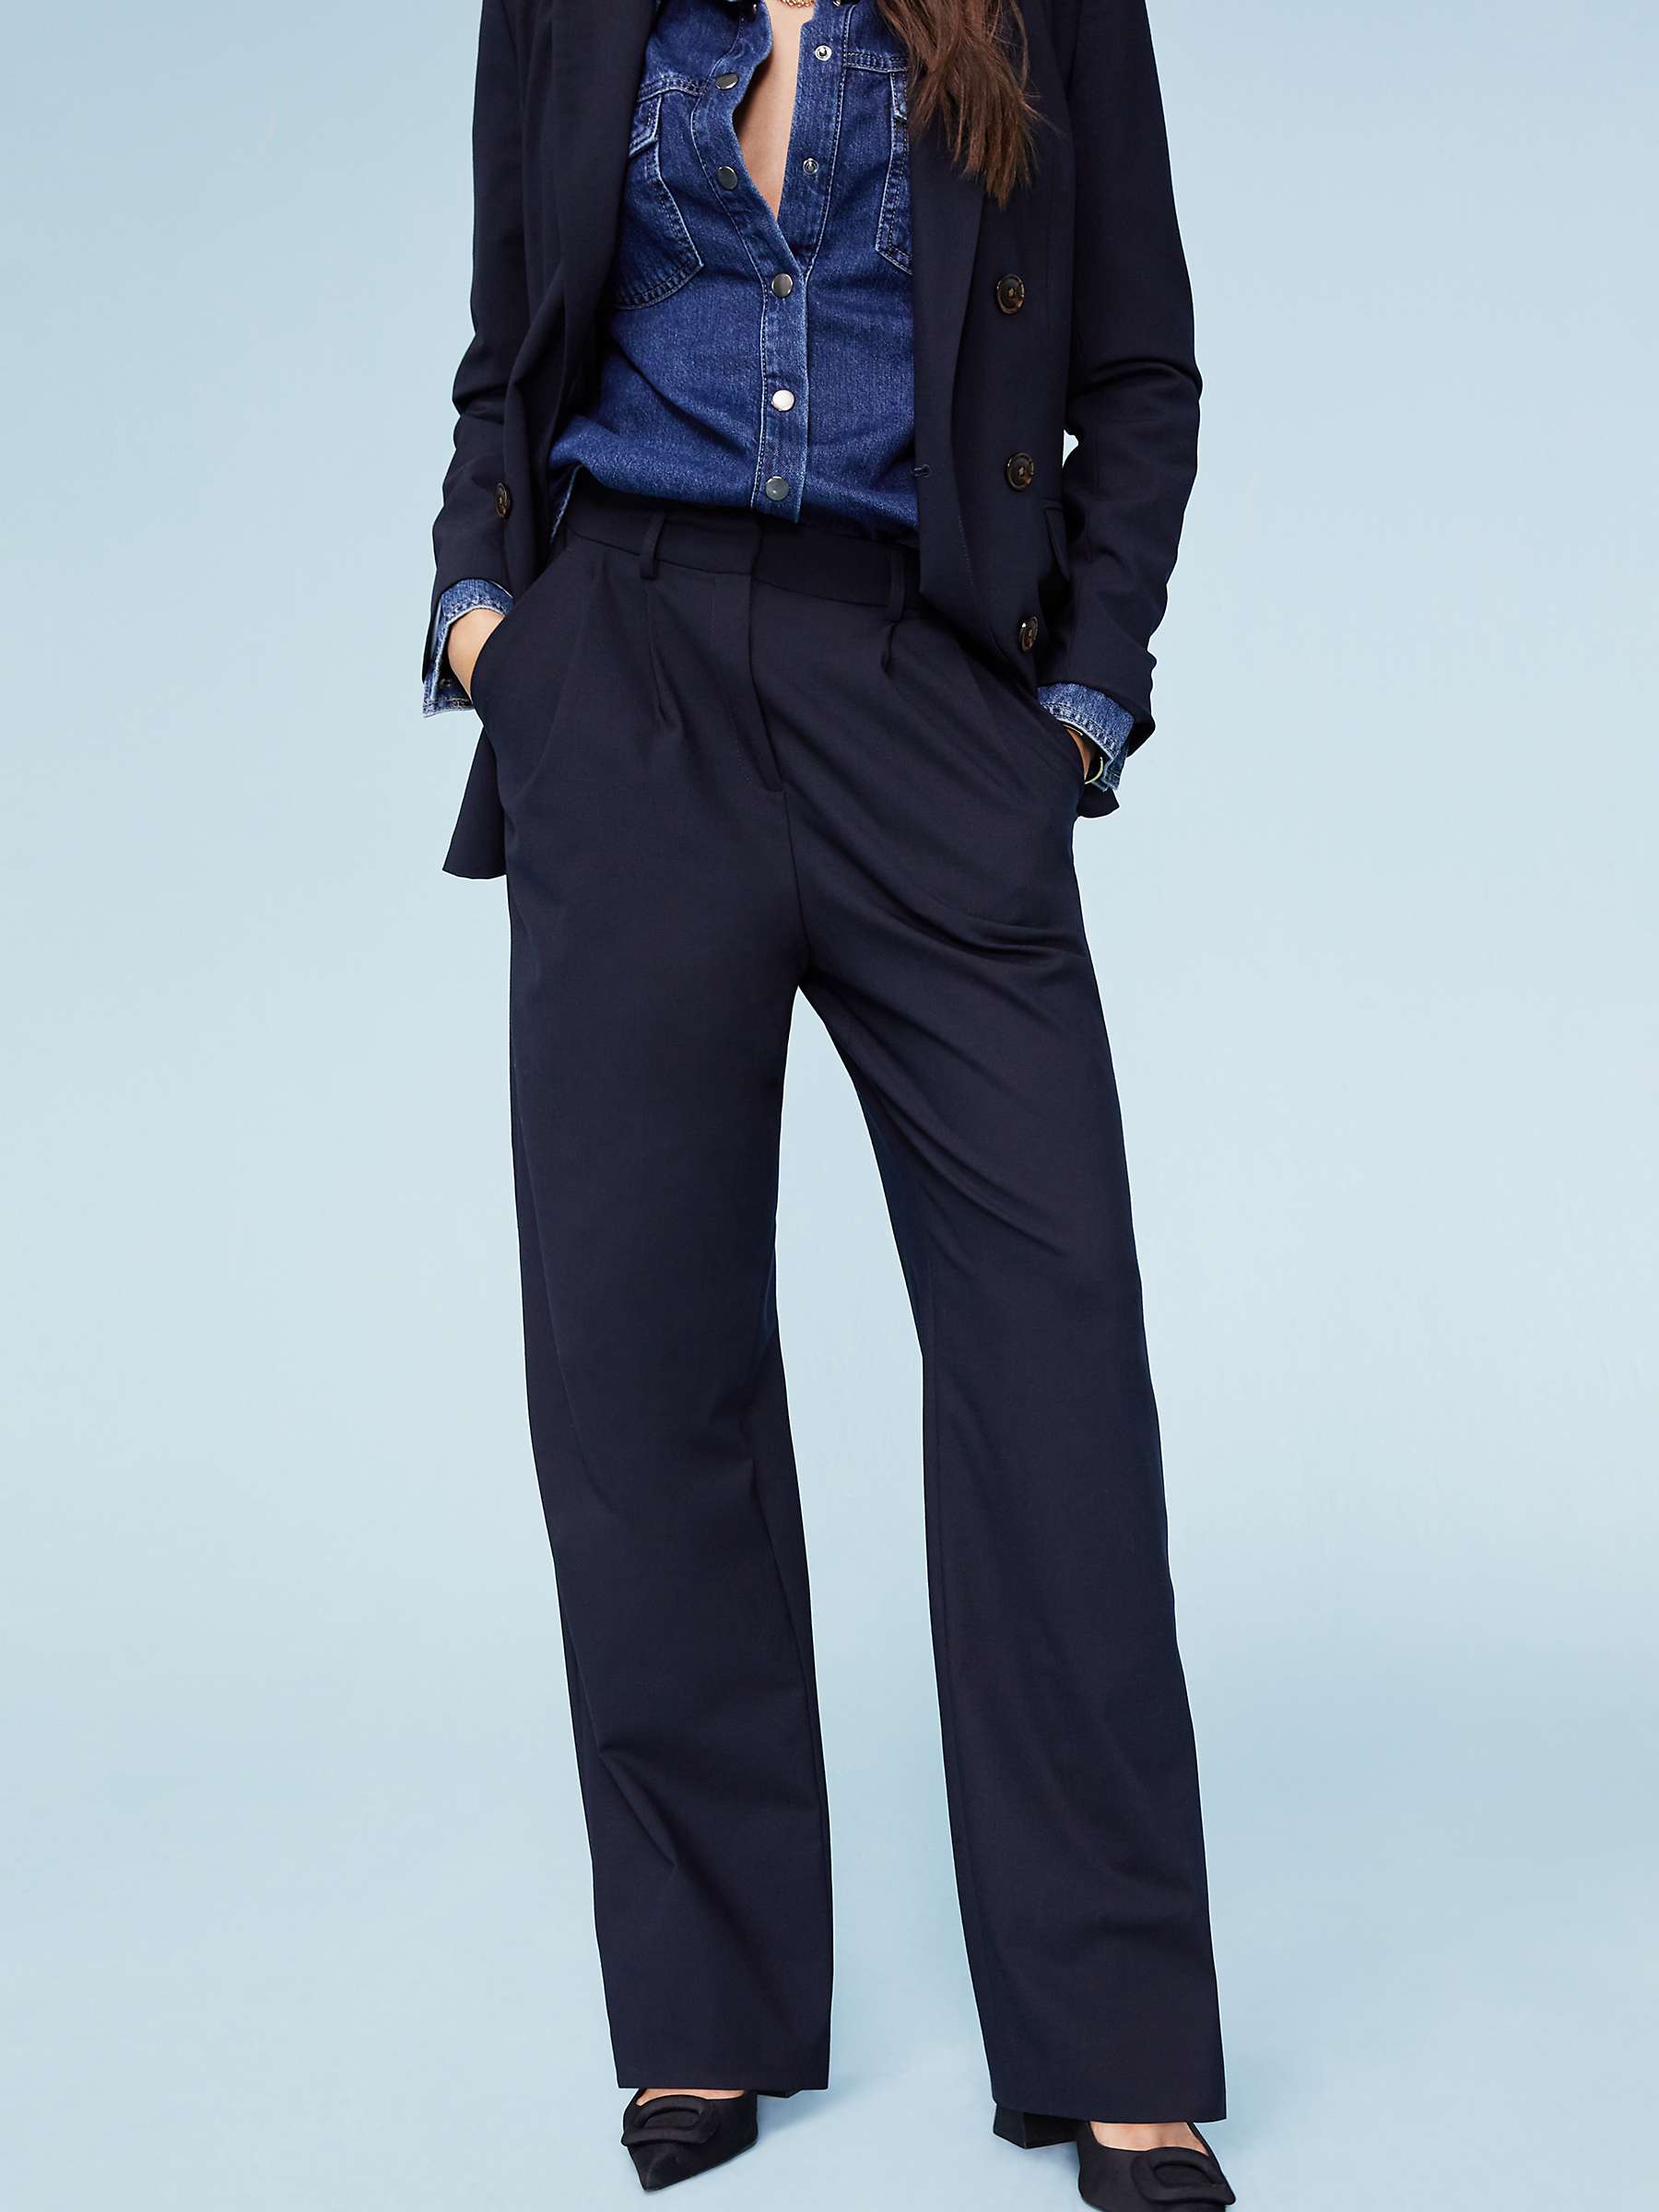 Buy Baukjen Magnolia Wool Blend Trousers, Navy Online at johnlewis.com